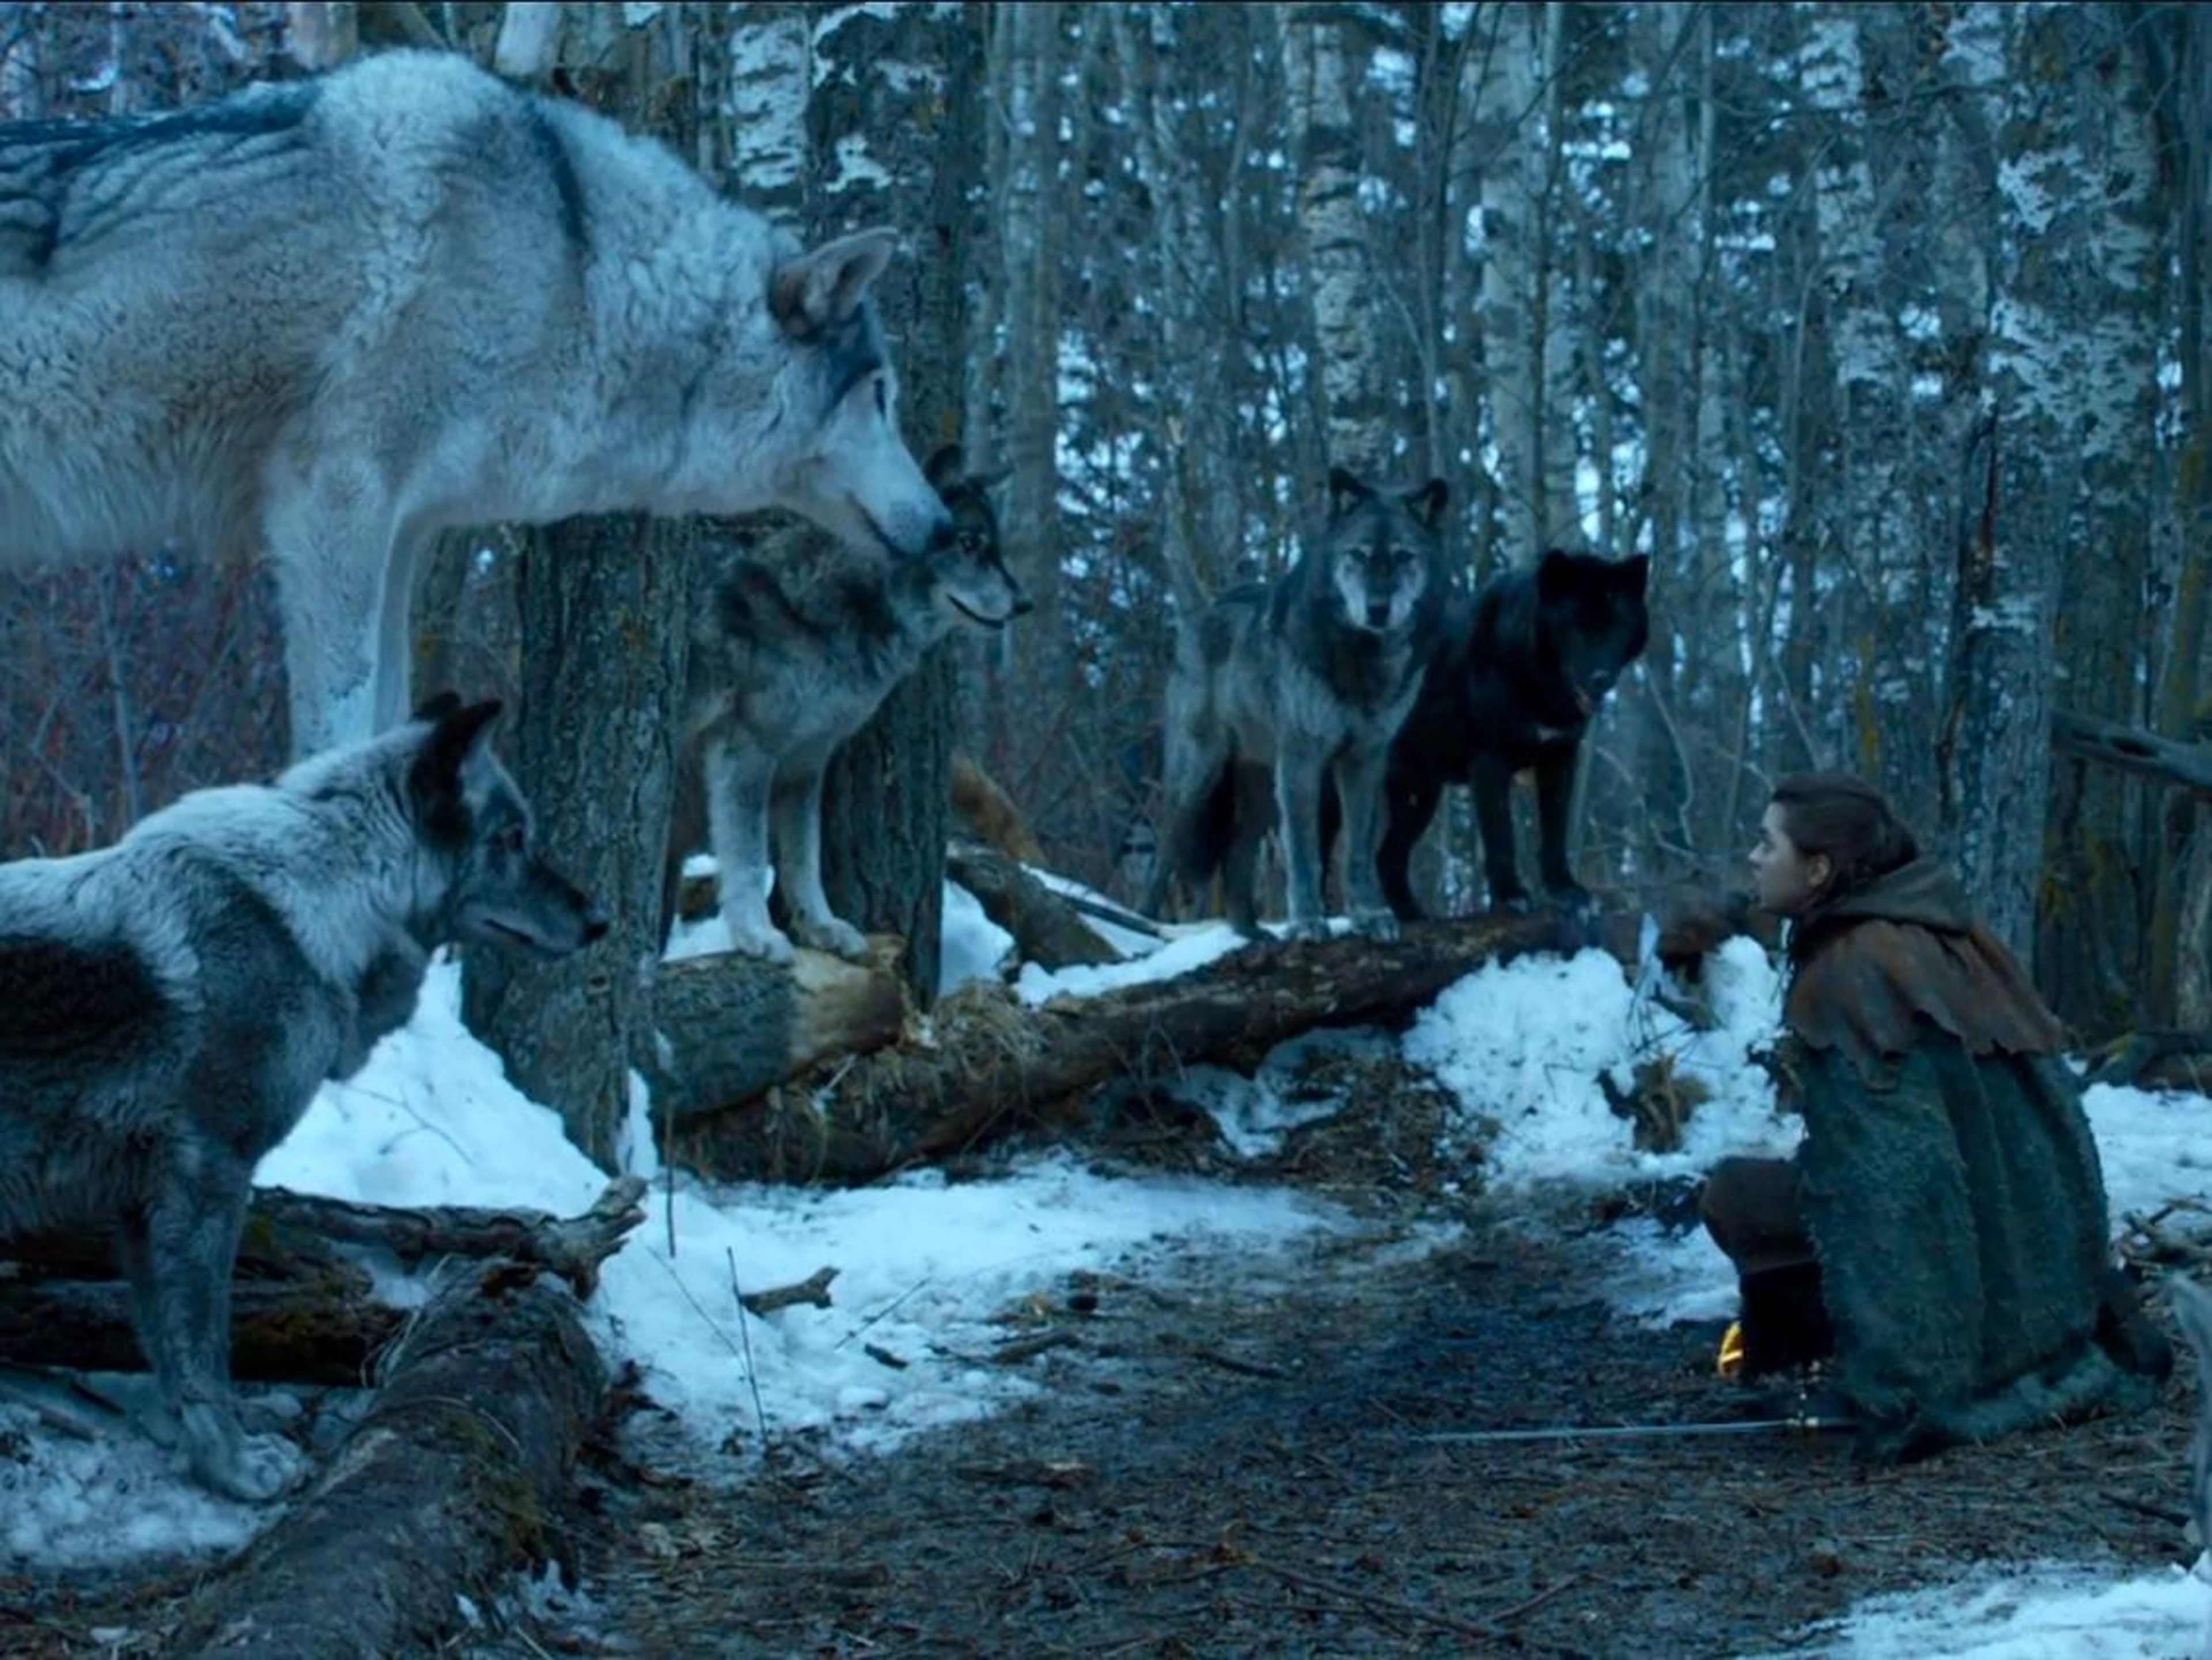 Arya and her direwolf, Nymeria.